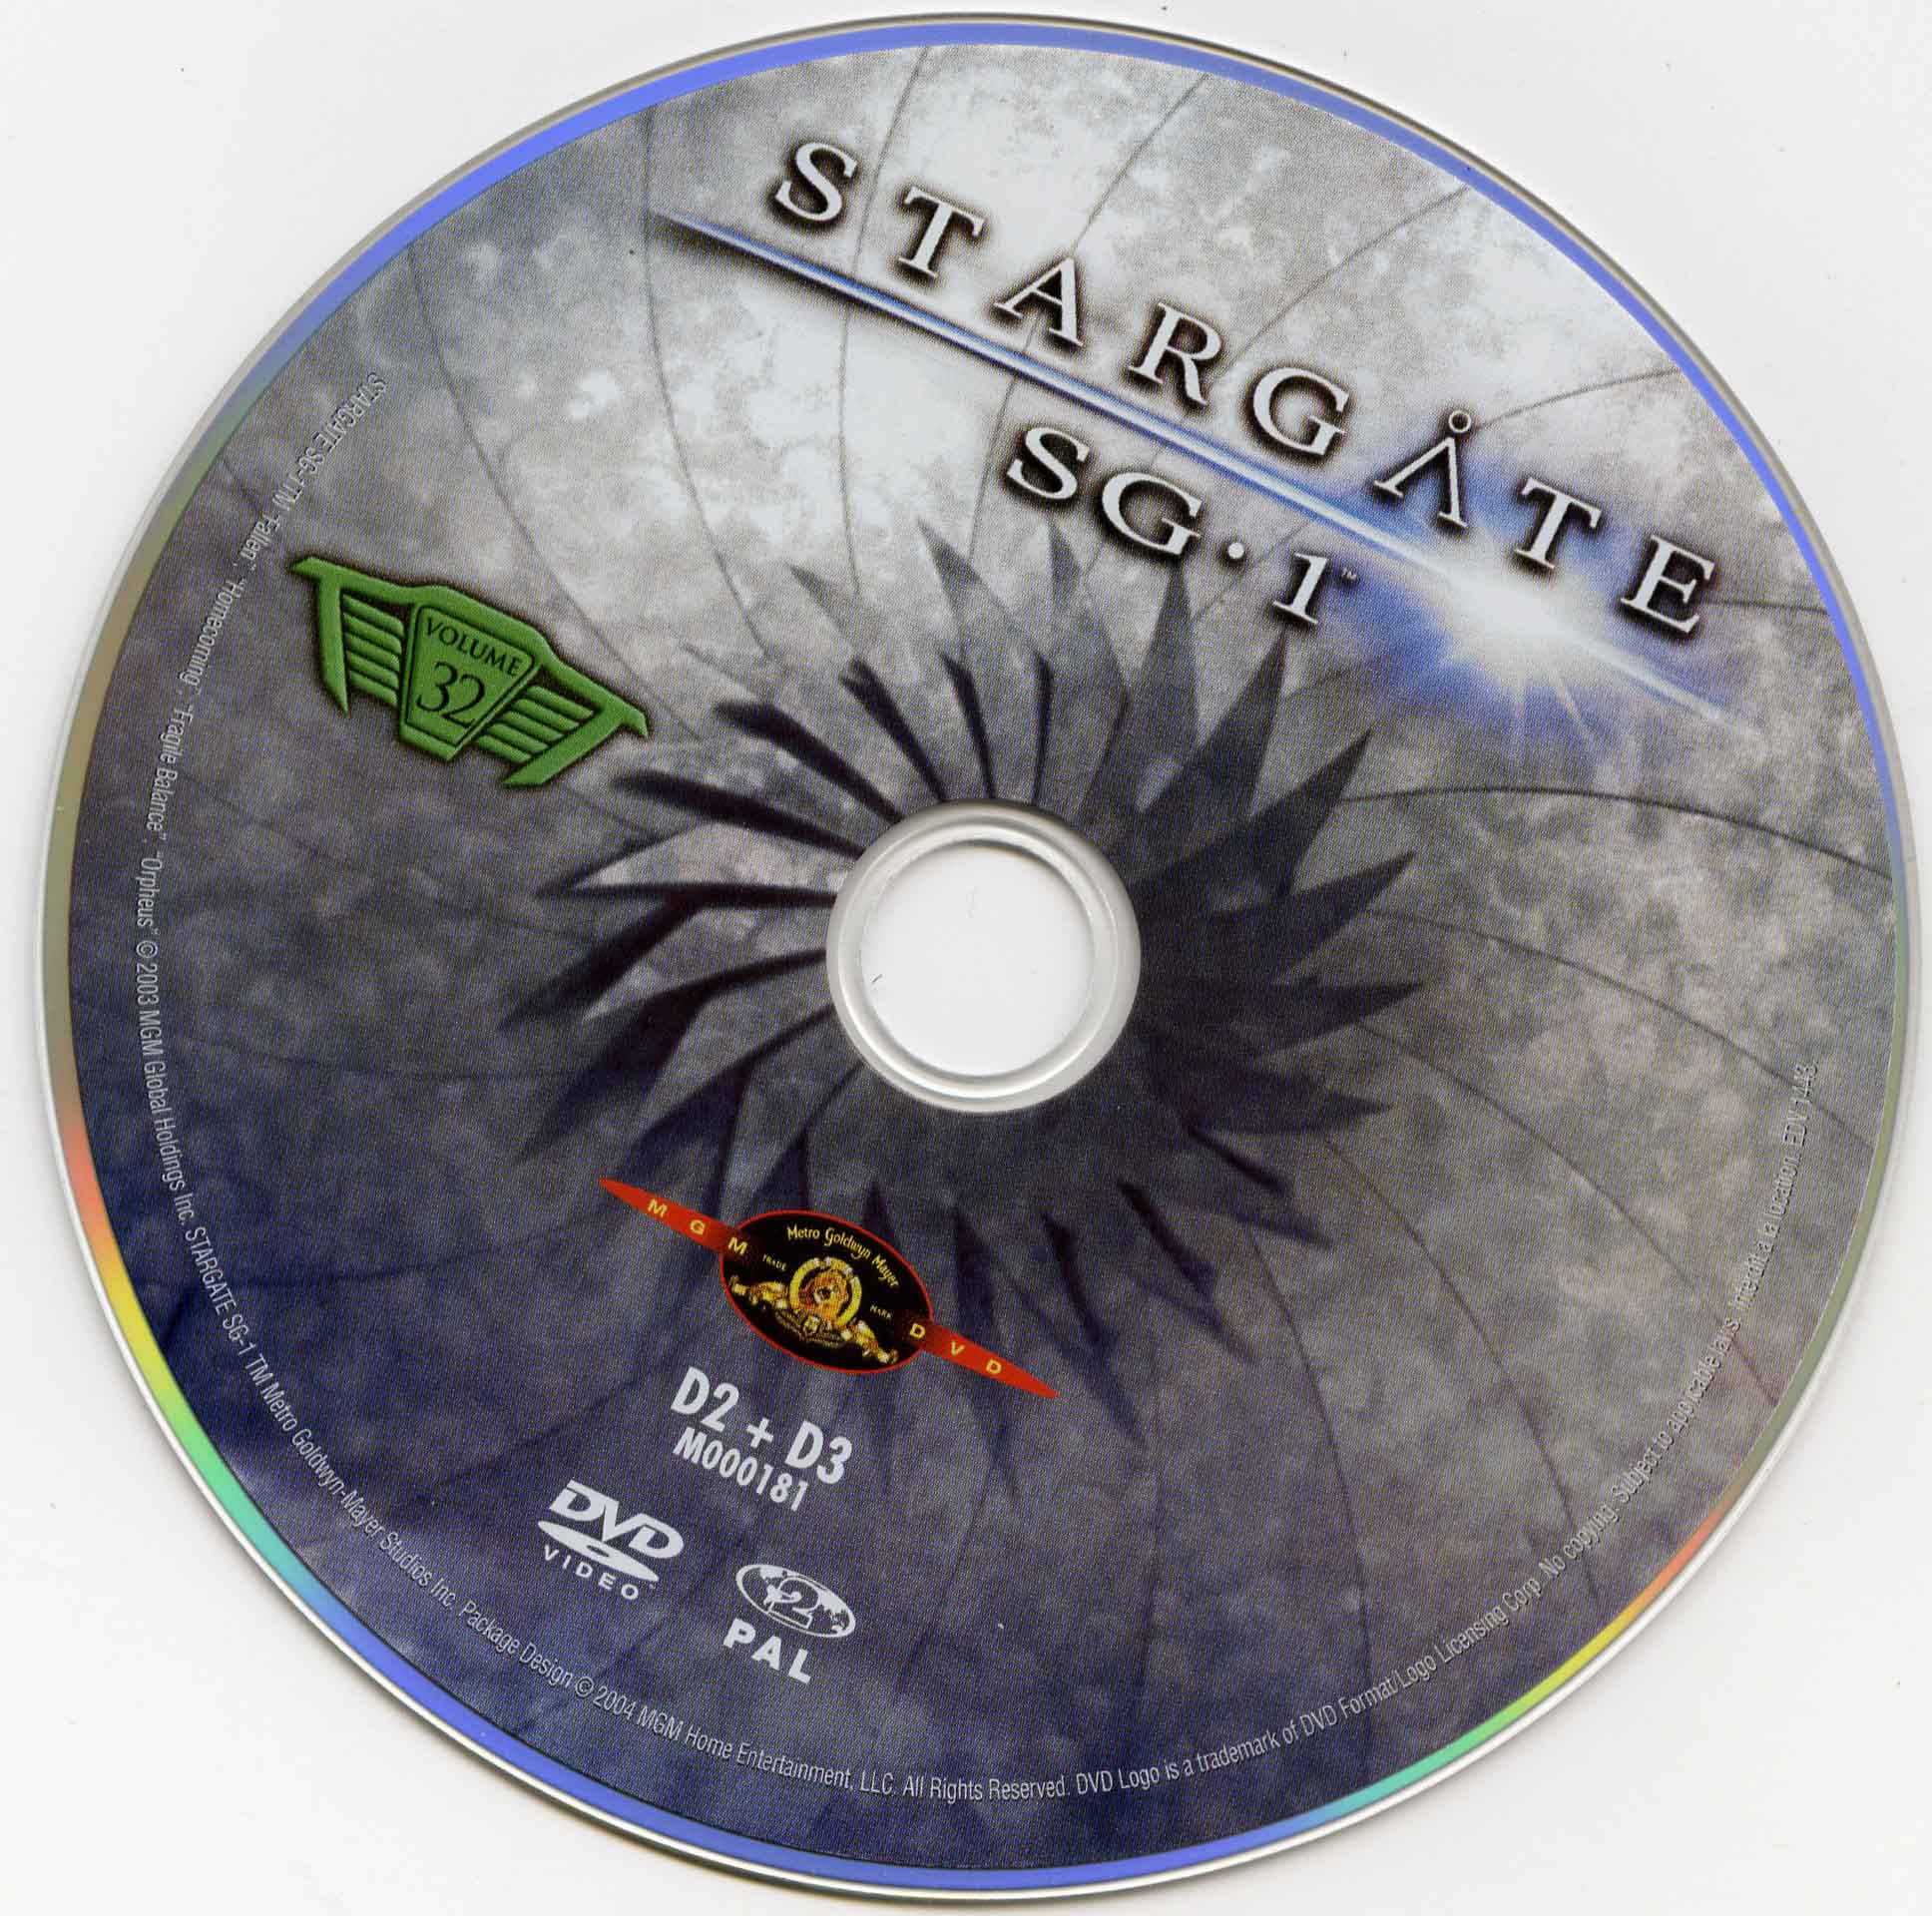 Stargate SG1 vol 32